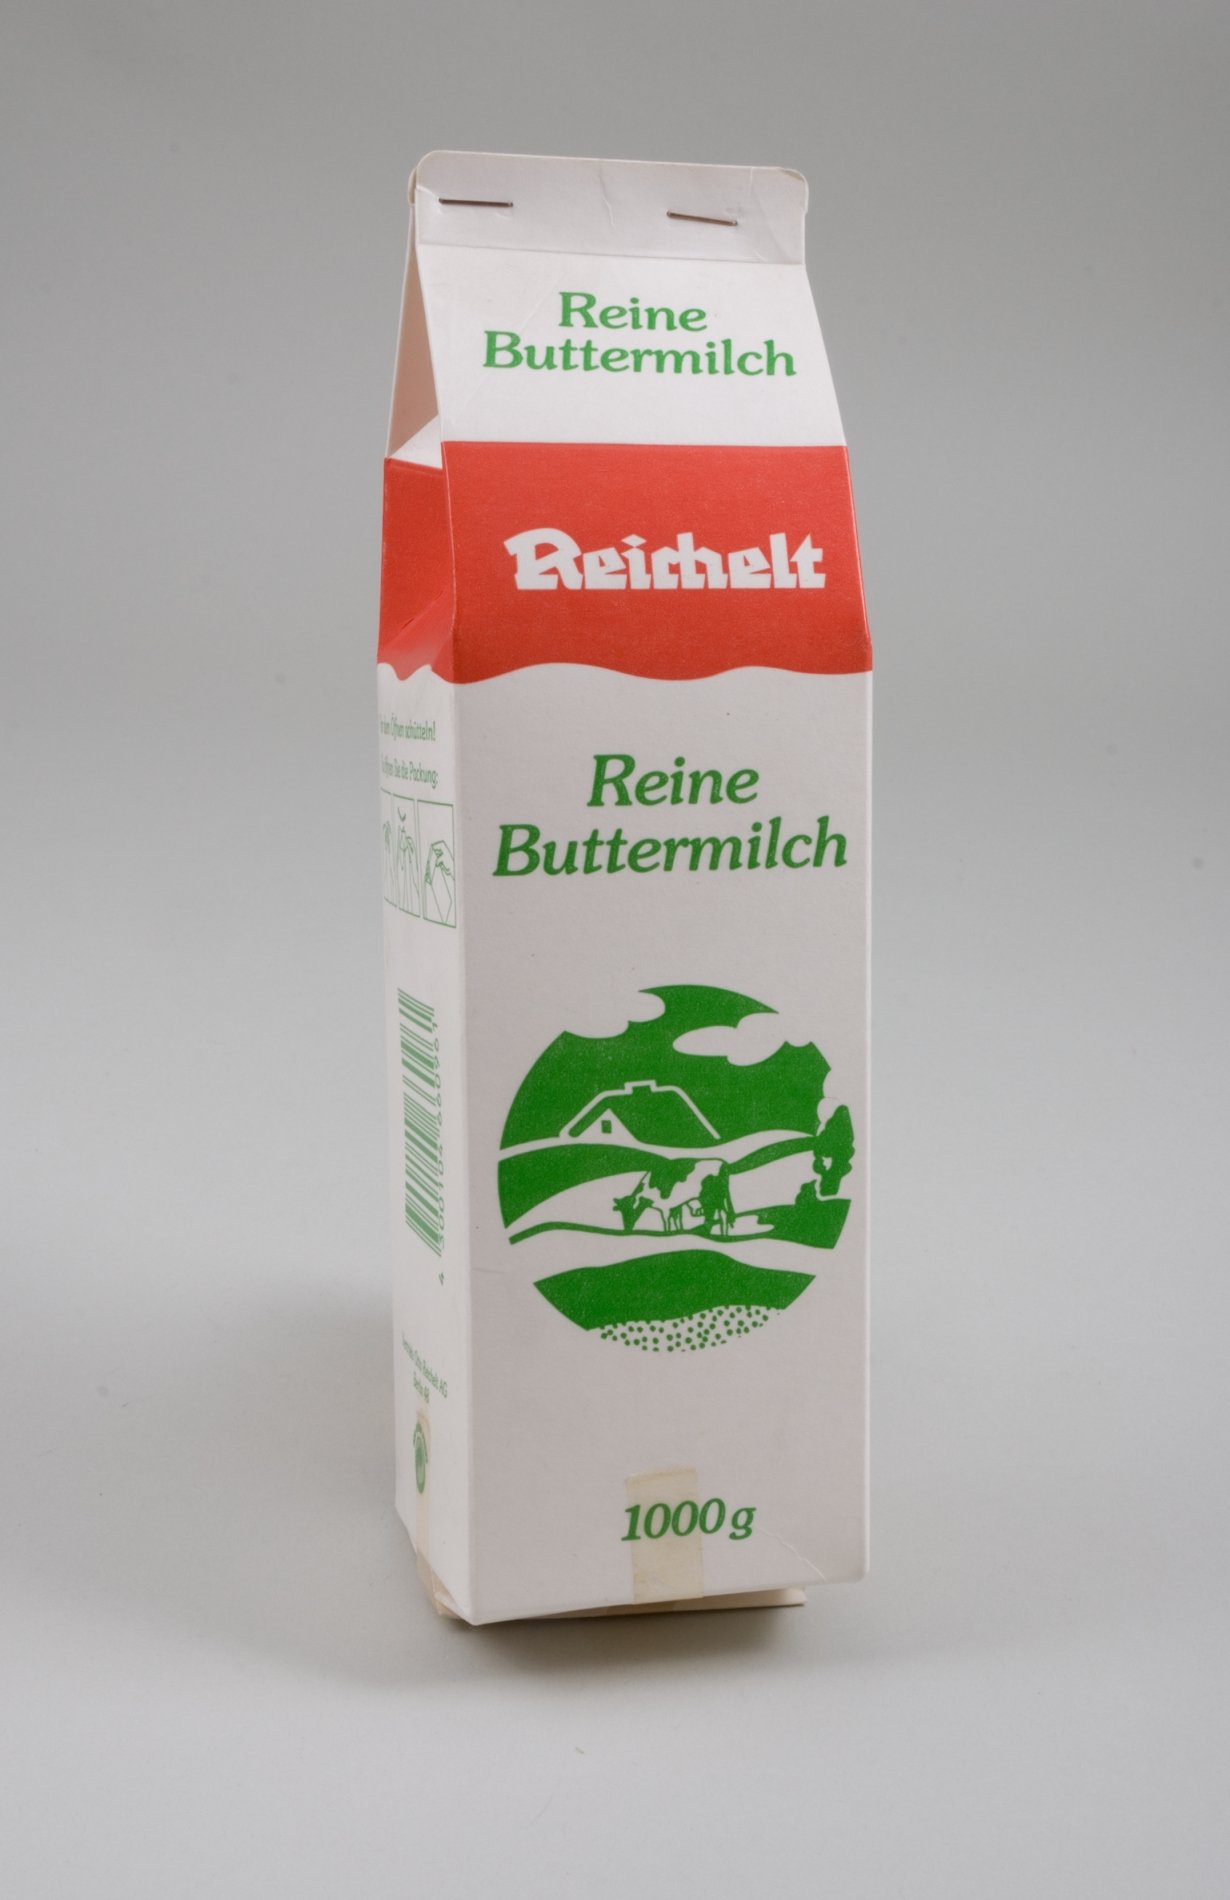 Warenmuster "Reine Buttermilch" der Firma "Reichelt" (Stiftung Domäne Dahlem - Landgut und Museum, Weiternutzung nur mit Genehmigung des Museums CC BY-NC-SA)